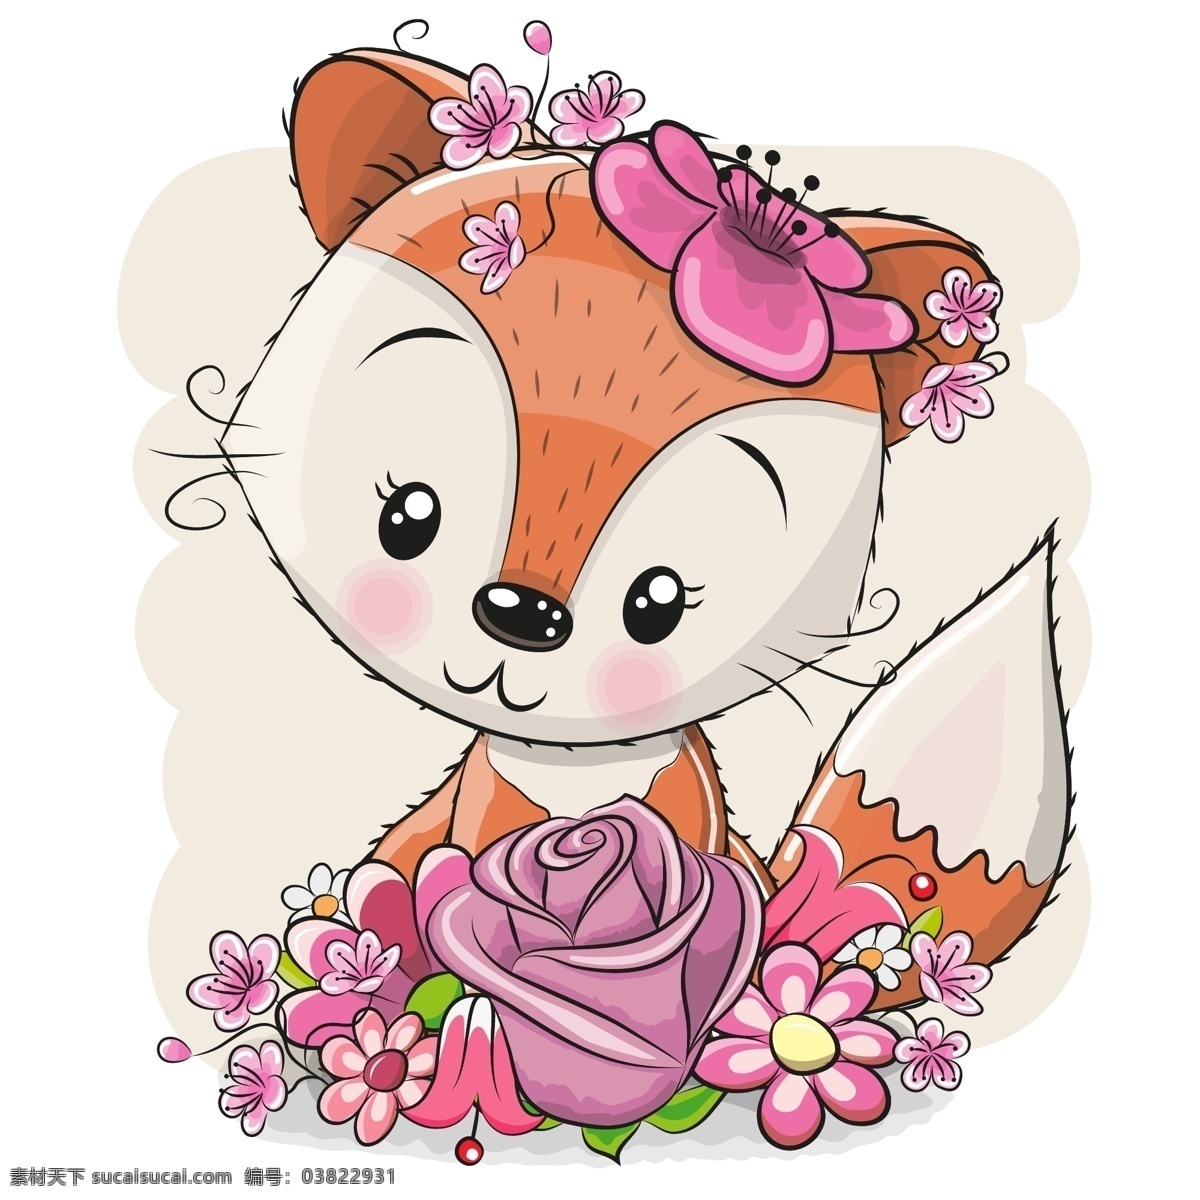 可爱卡通狐狸 可爱卡通动物 爱心 花朵 彩虹 狐狸 卡通 动物 幼儿园素材 婴儿素材 卡通动物 卡通设计